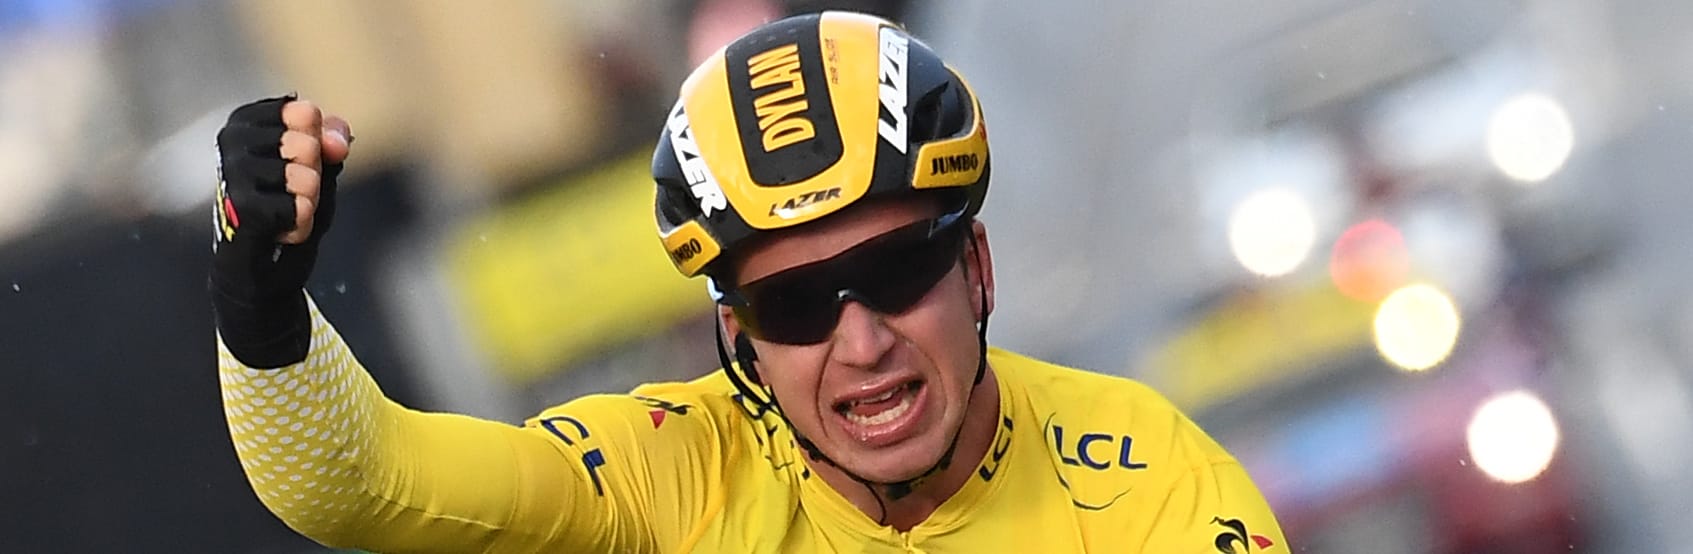 Tour de France 2019, tappa 1: Viviani cerca subito la maglia gialla per puntare alla verde, occhio a Groenewegen